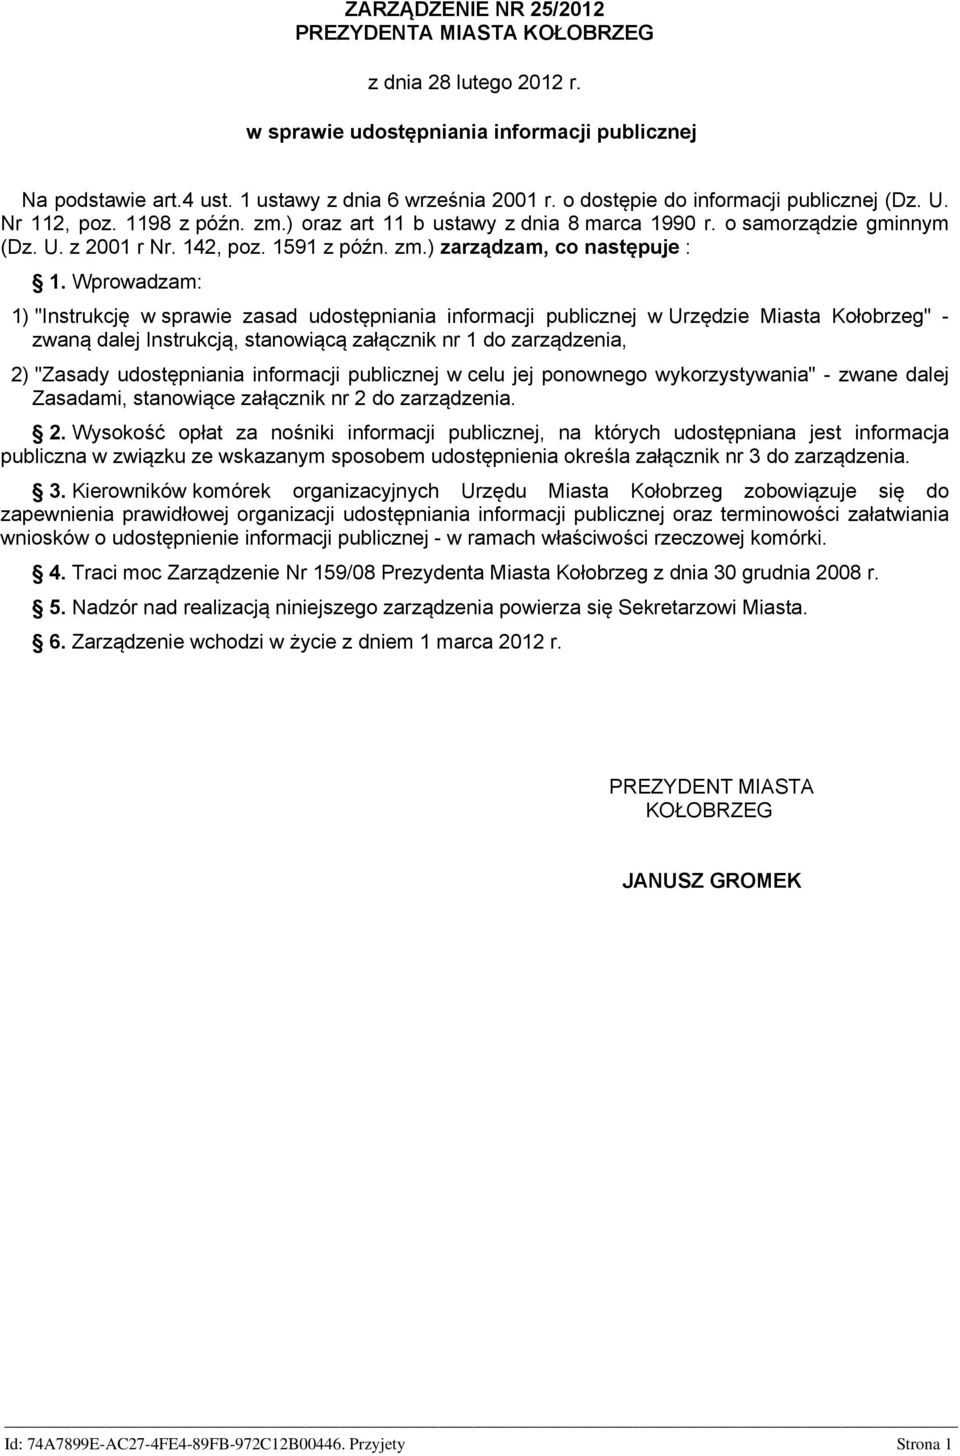 Wprowadzam: 1) "Instrukcję w sprawie zasad udostępniania informacji publicznej w Urzędzie Miasta Kołobrzeg" - zwaną dalej Instrukcją, stanowiącą załącznik nr 1 do zarządzenia, 2) "Zasady